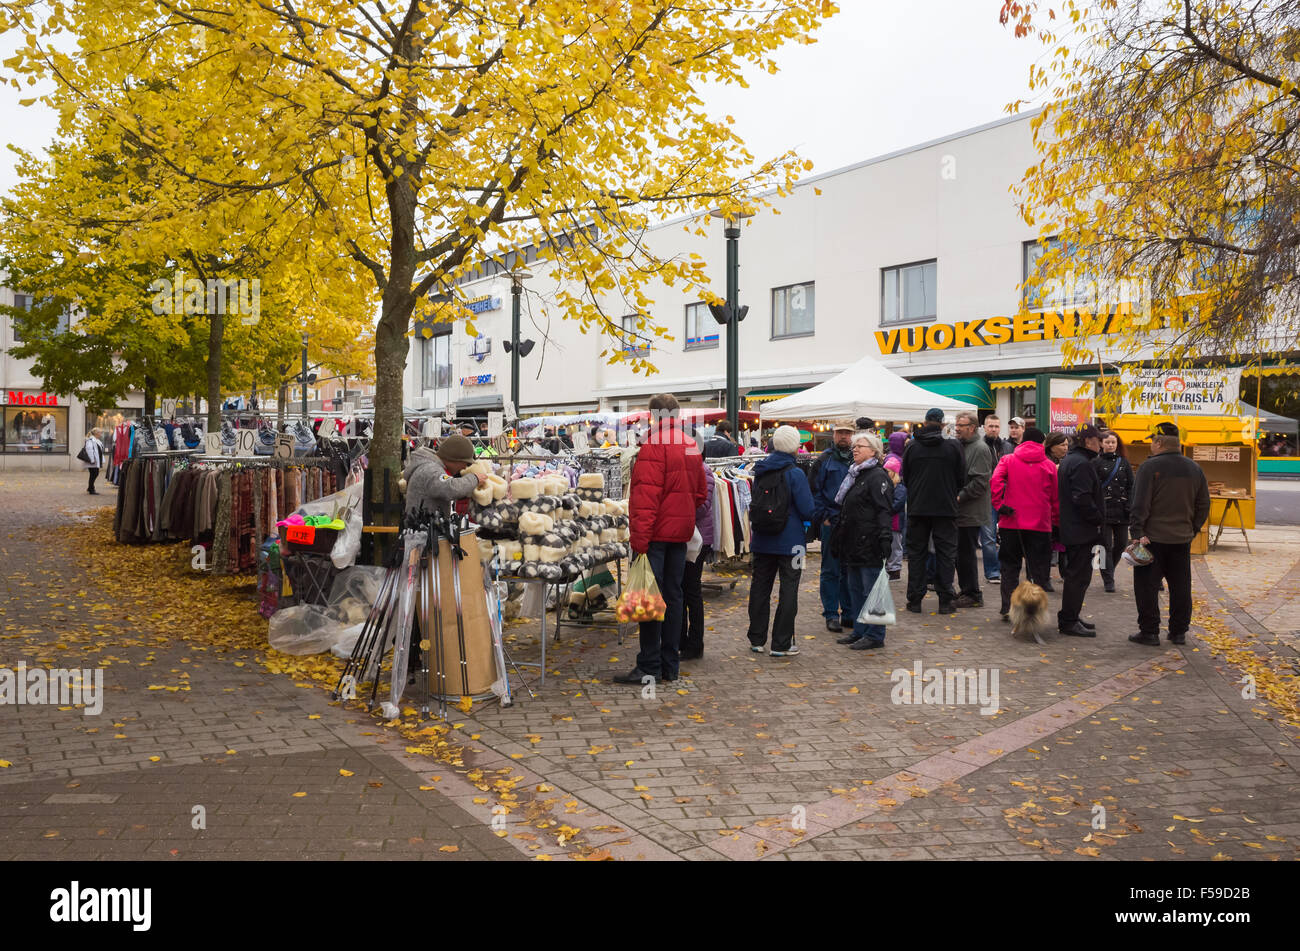 Imatra, Finnland - 25. Oktober 2015: Saisonale Straße Messe in Finnland, gehen die Menschen zwischen den Ständen mit Kleidung Stockfoto